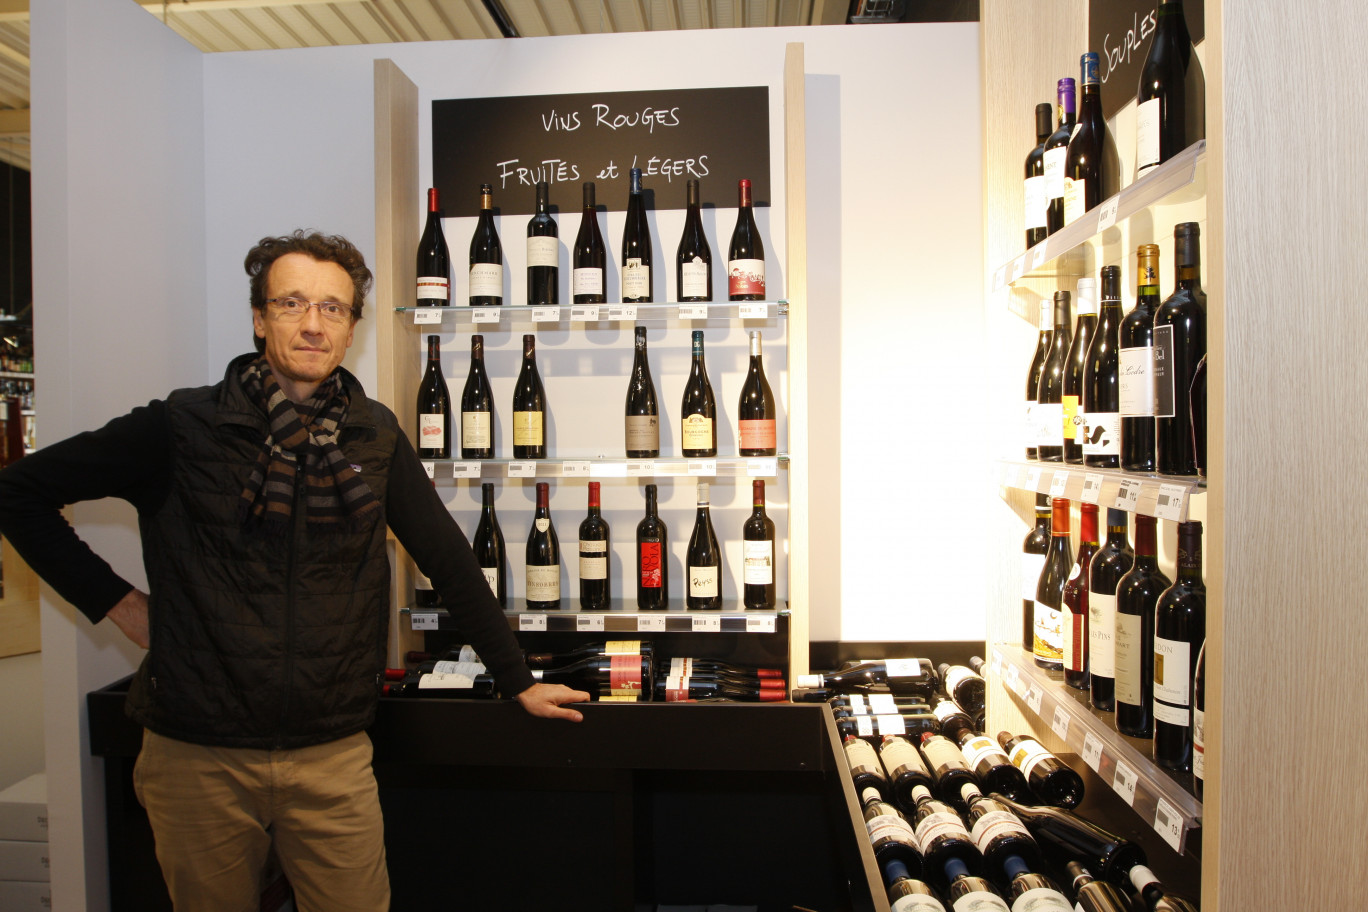 Damien Delebarre est un passionné du vin et de son univers. Il a développé un concept intéressant de classification du vin par les saveurs qu’il dégage et non pas par région de production.